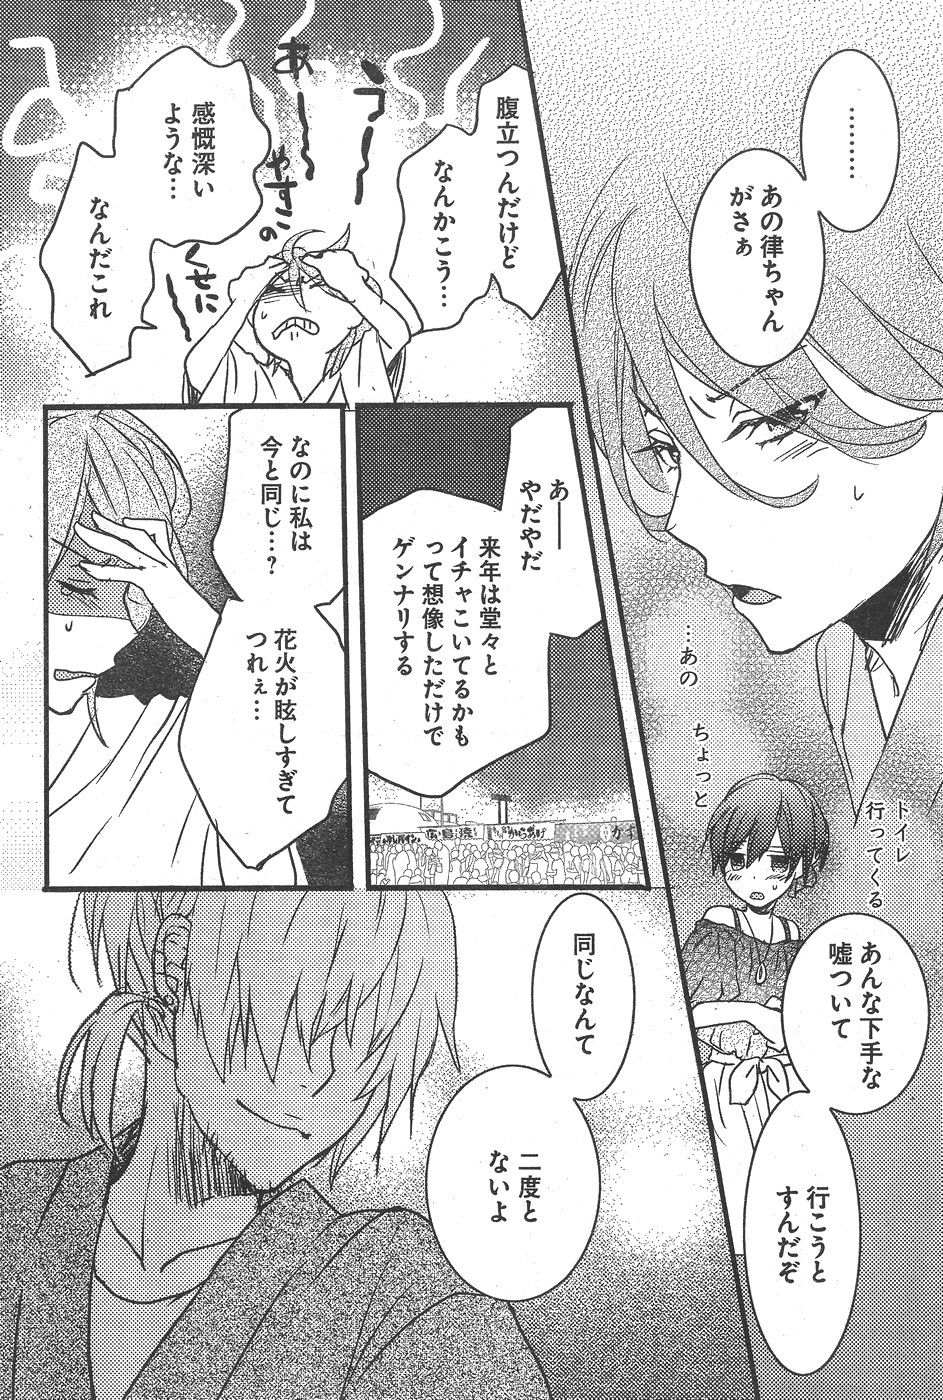 Bokura wa Minna Kawaisou - Chapter 74 - Page 22